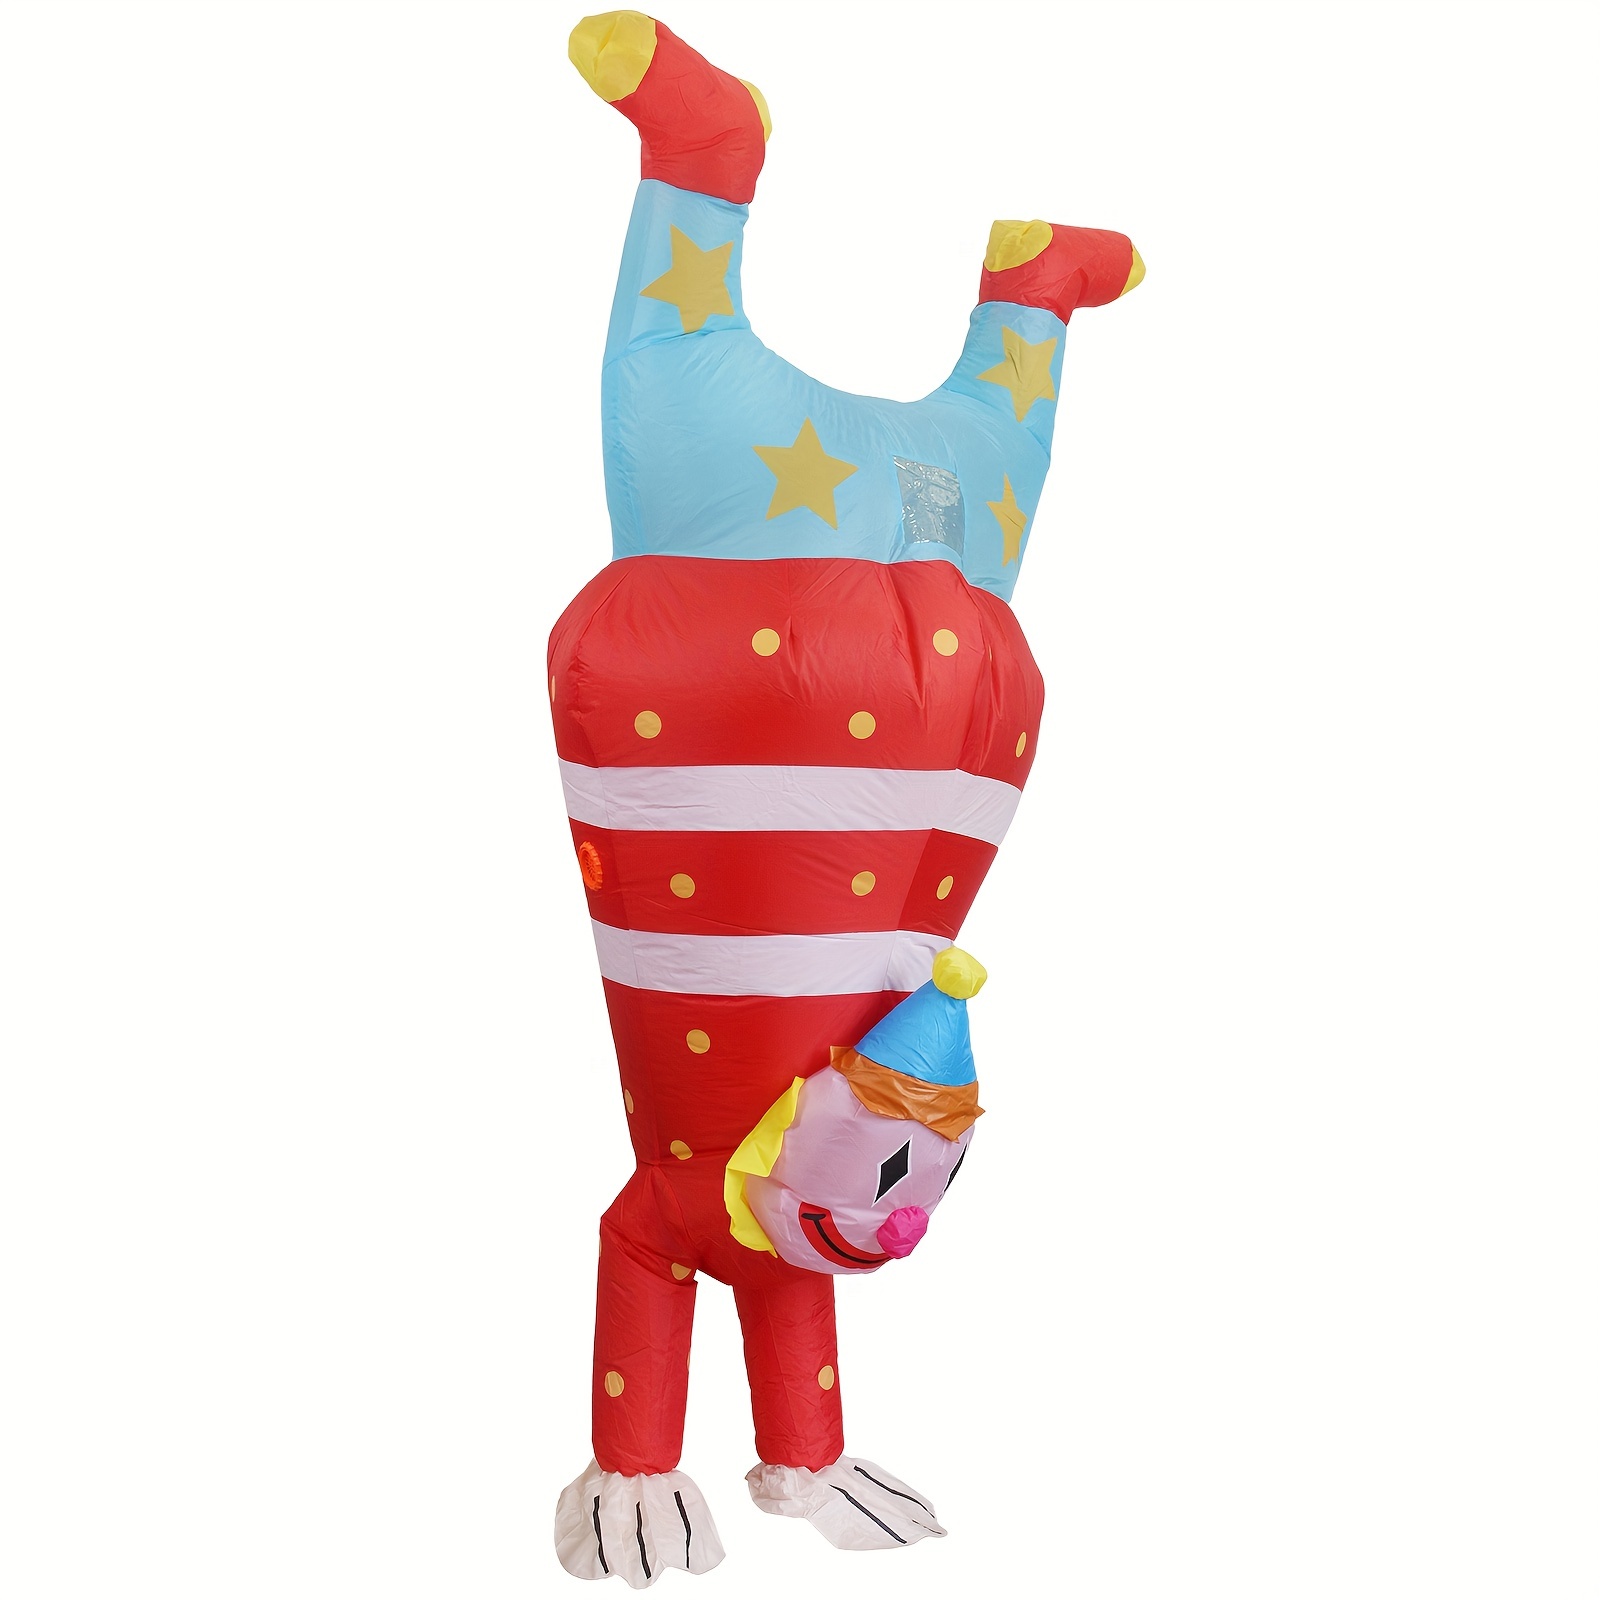 Déguisement adulte GENERIQUE Costume clown gonflable déguisement fete  accesssoire costume insolite drole